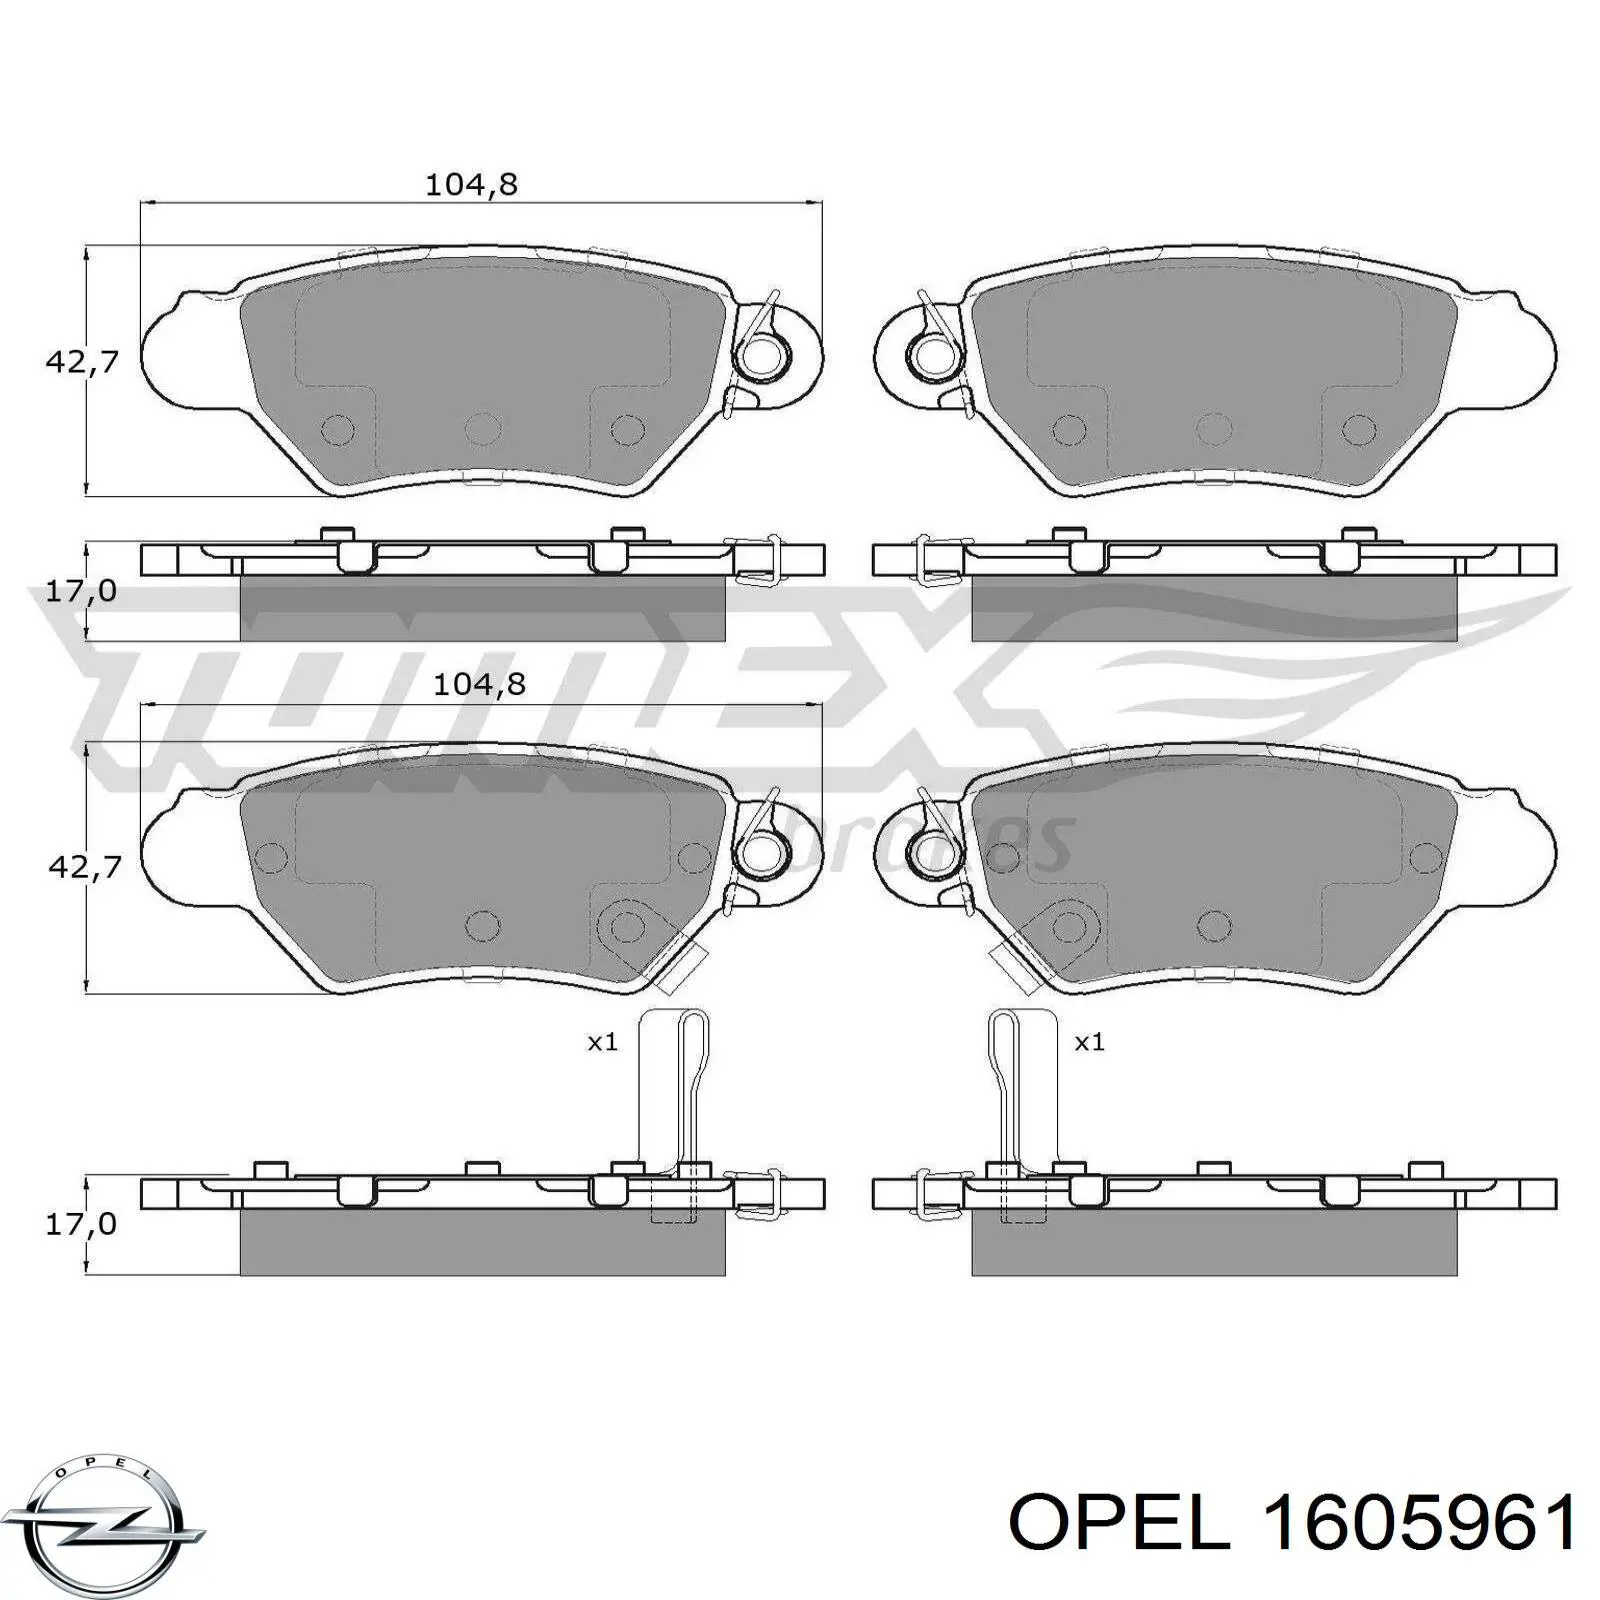 1605961 Opel pastillas de freno traseras